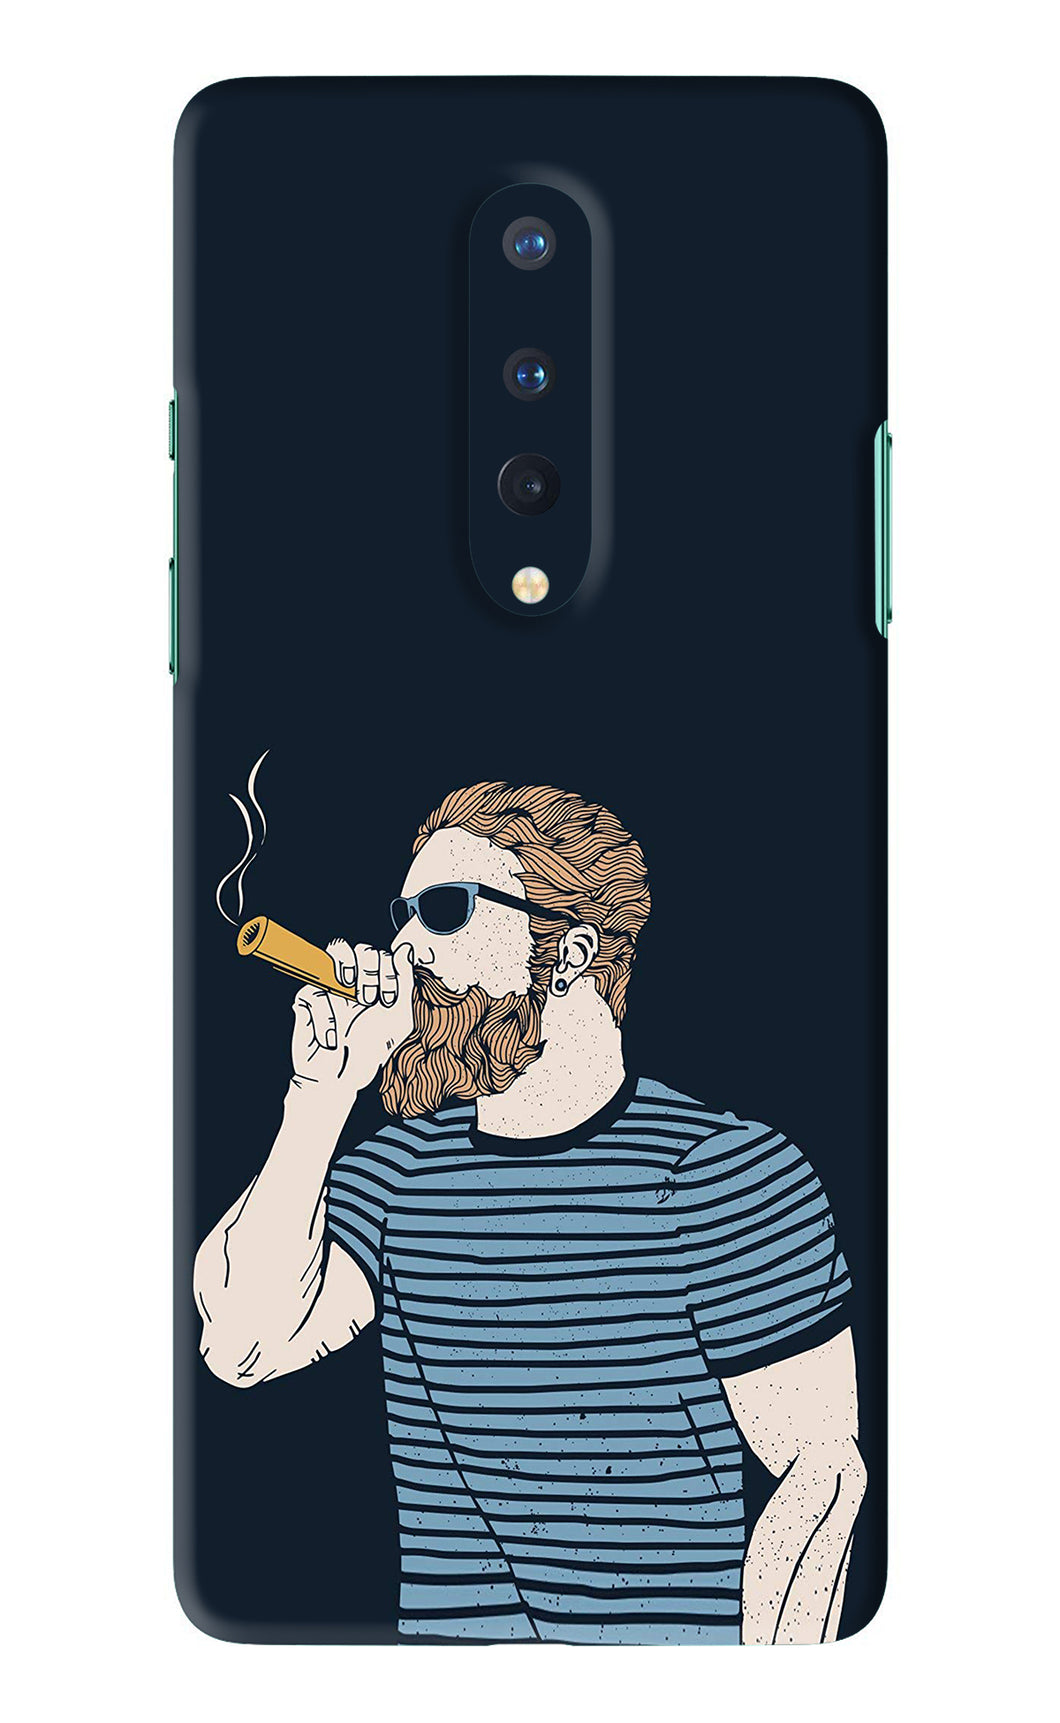 Smoking OnePlus 8 Back Skin Wrap